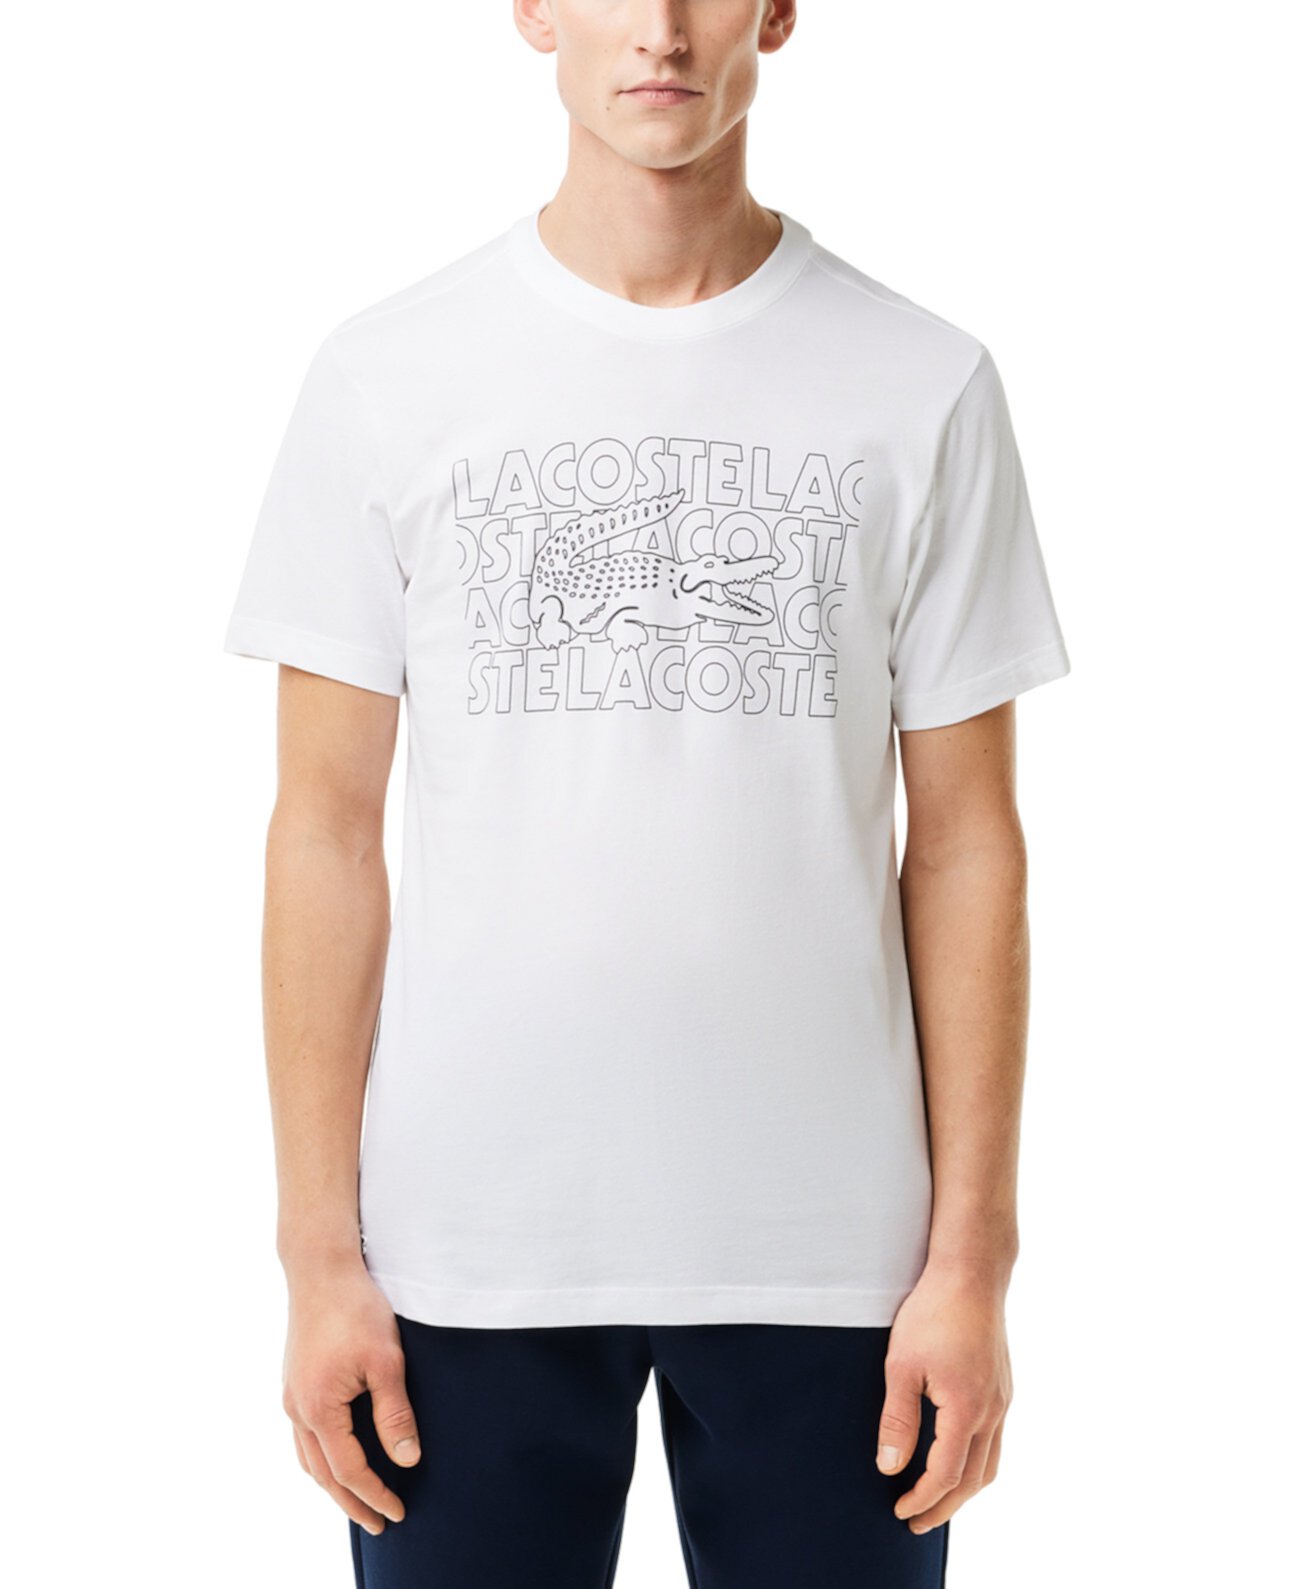 Мужская классическая футболка с короткими рукавами и графическим рисунком Lacoste